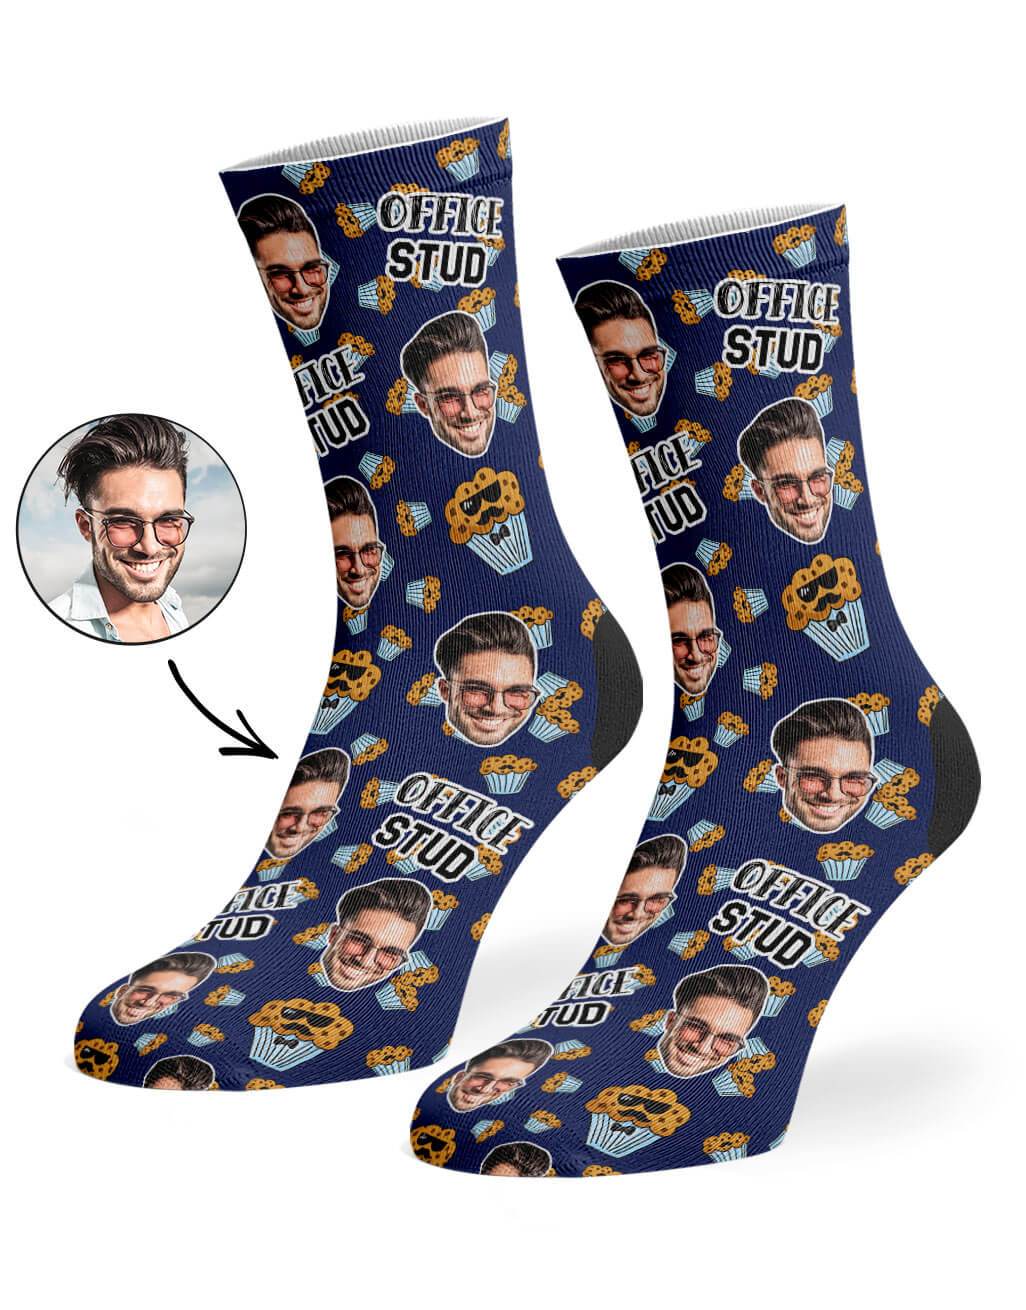 Office Stud Custom Socks